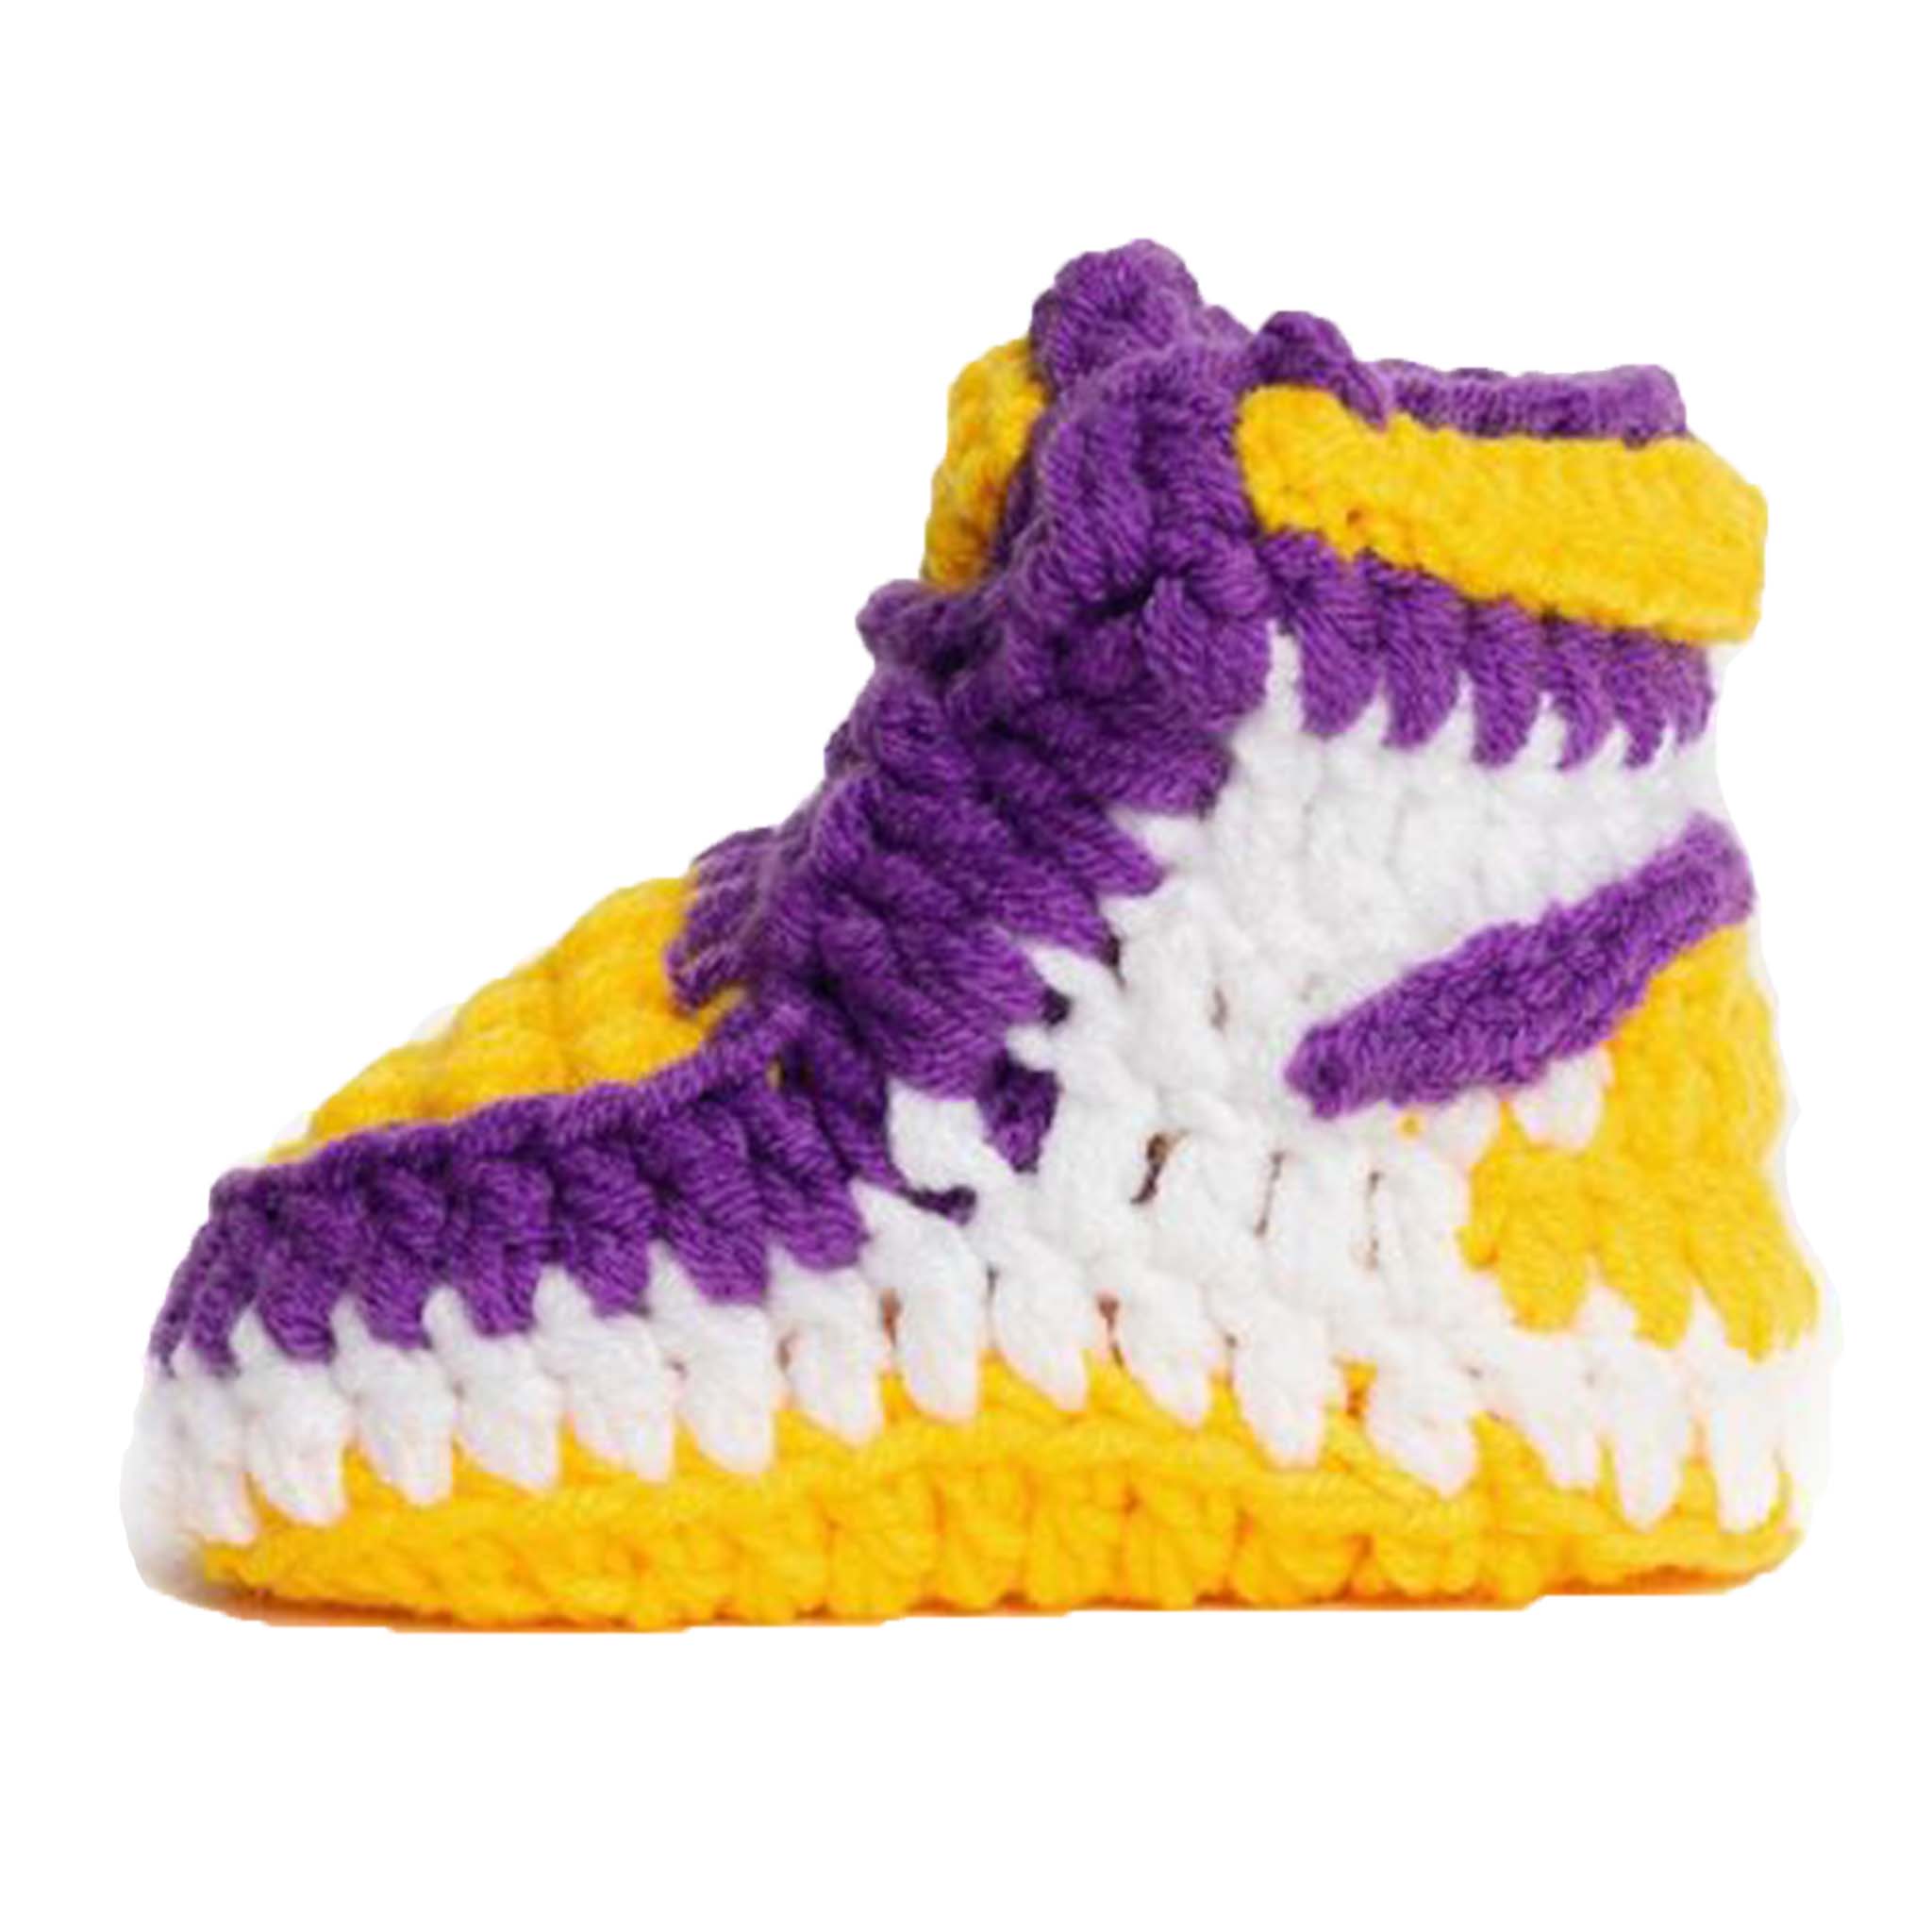 Retro LA Crochet Baby Shoes